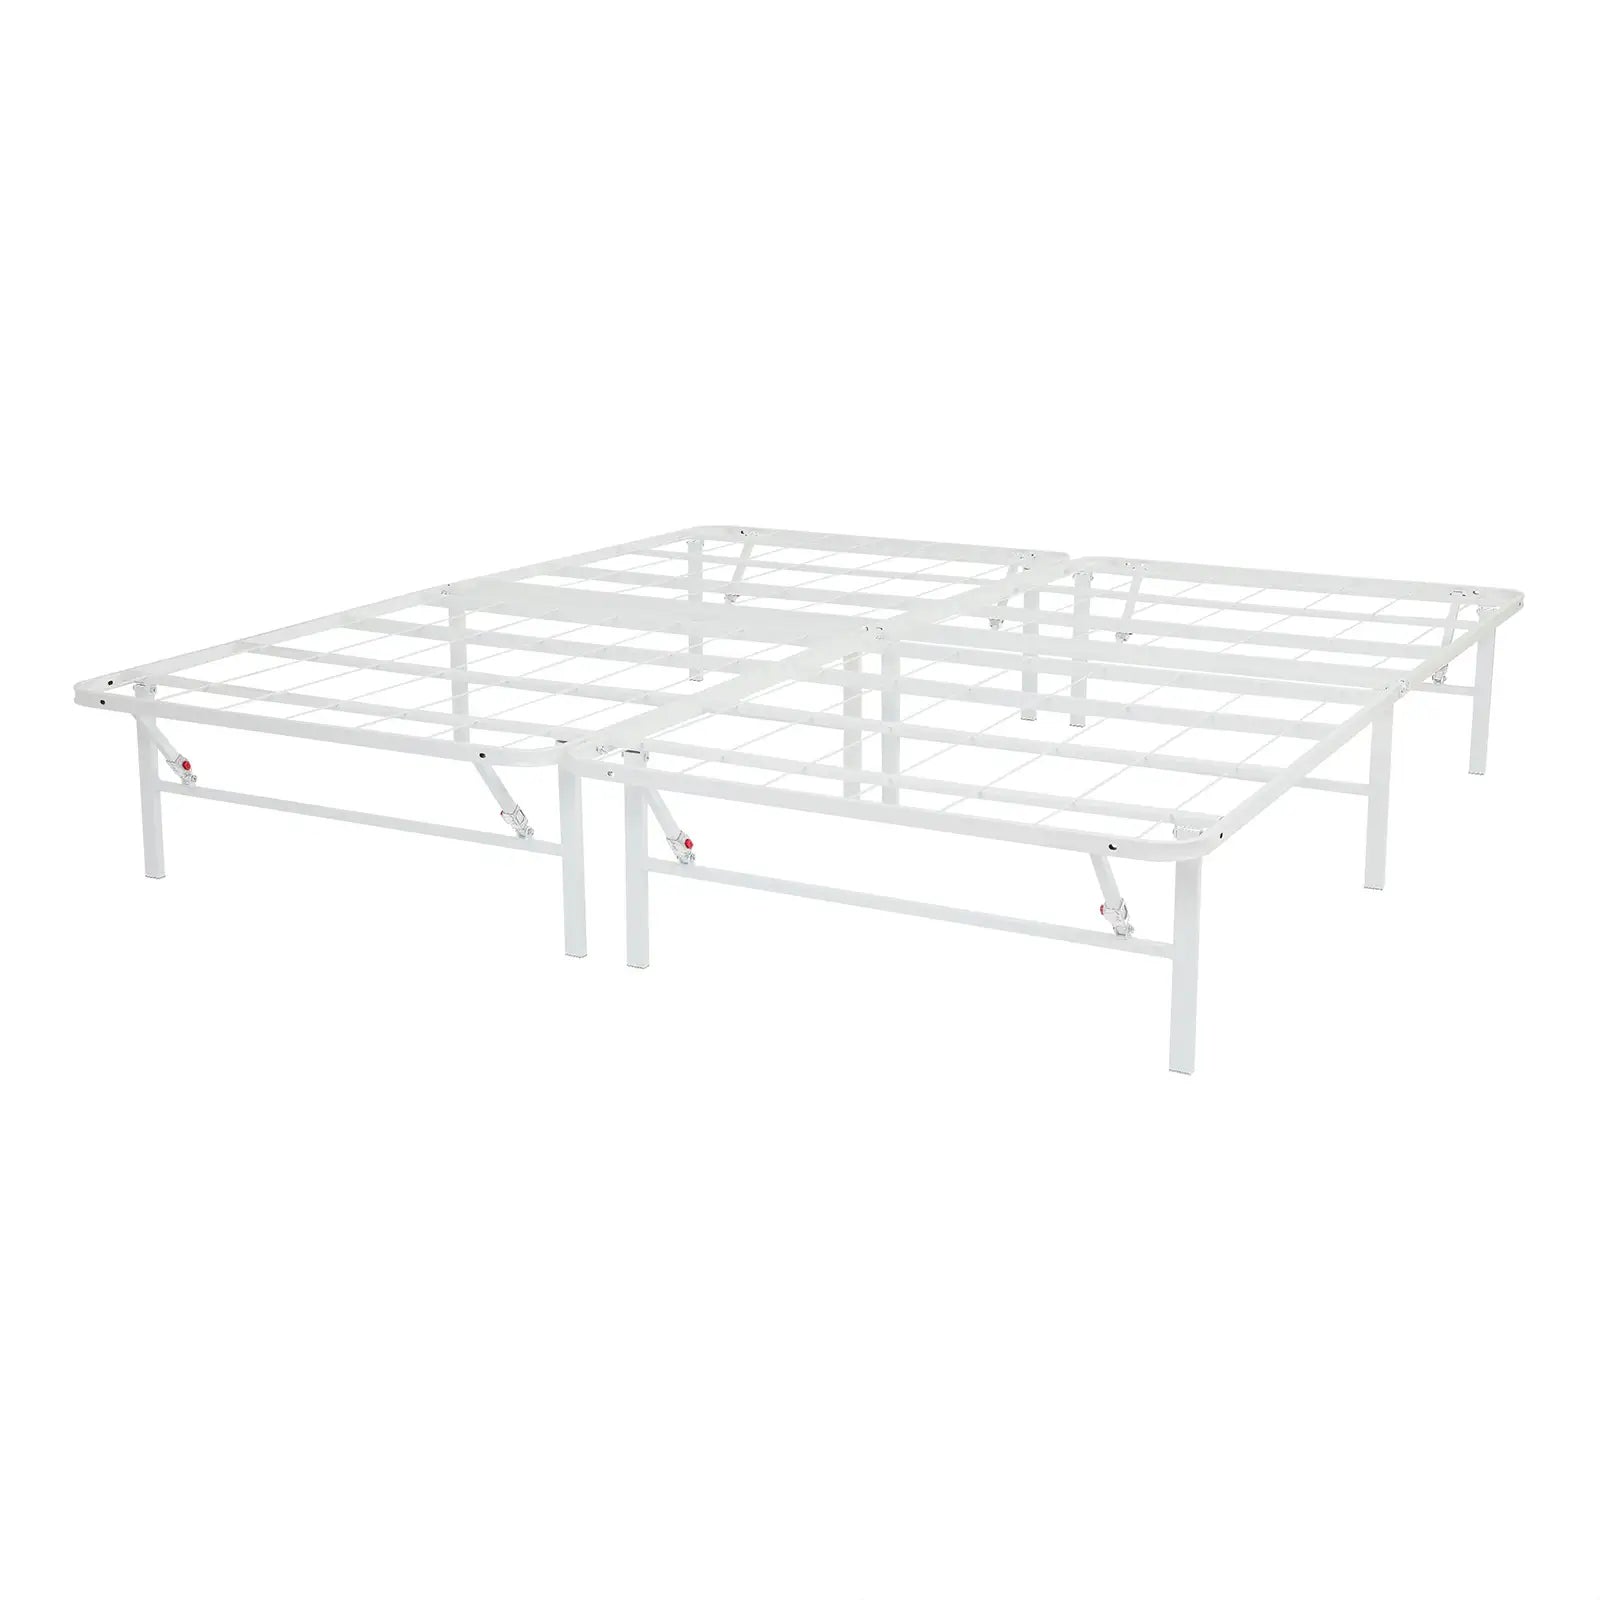 High Profile Foldable Steel Platform Bed Frame